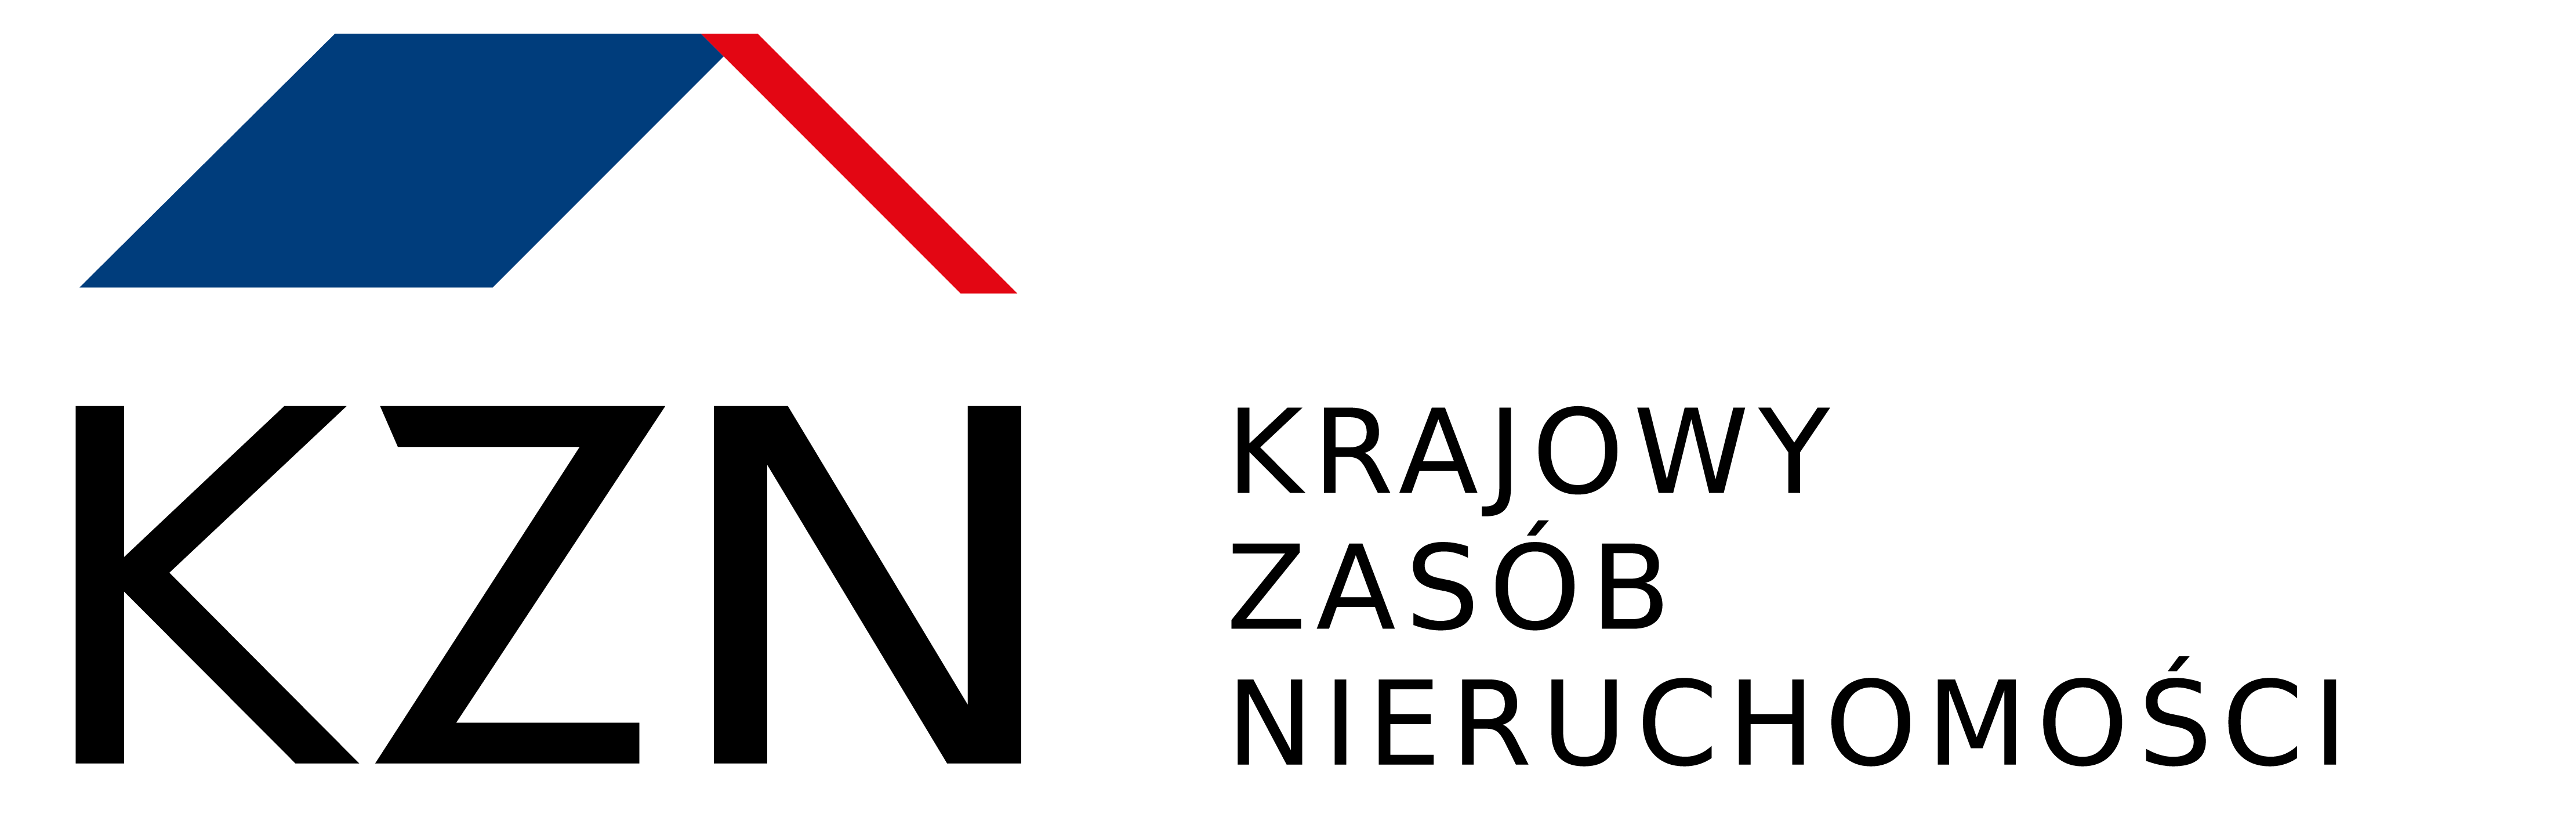 logo KZN 01